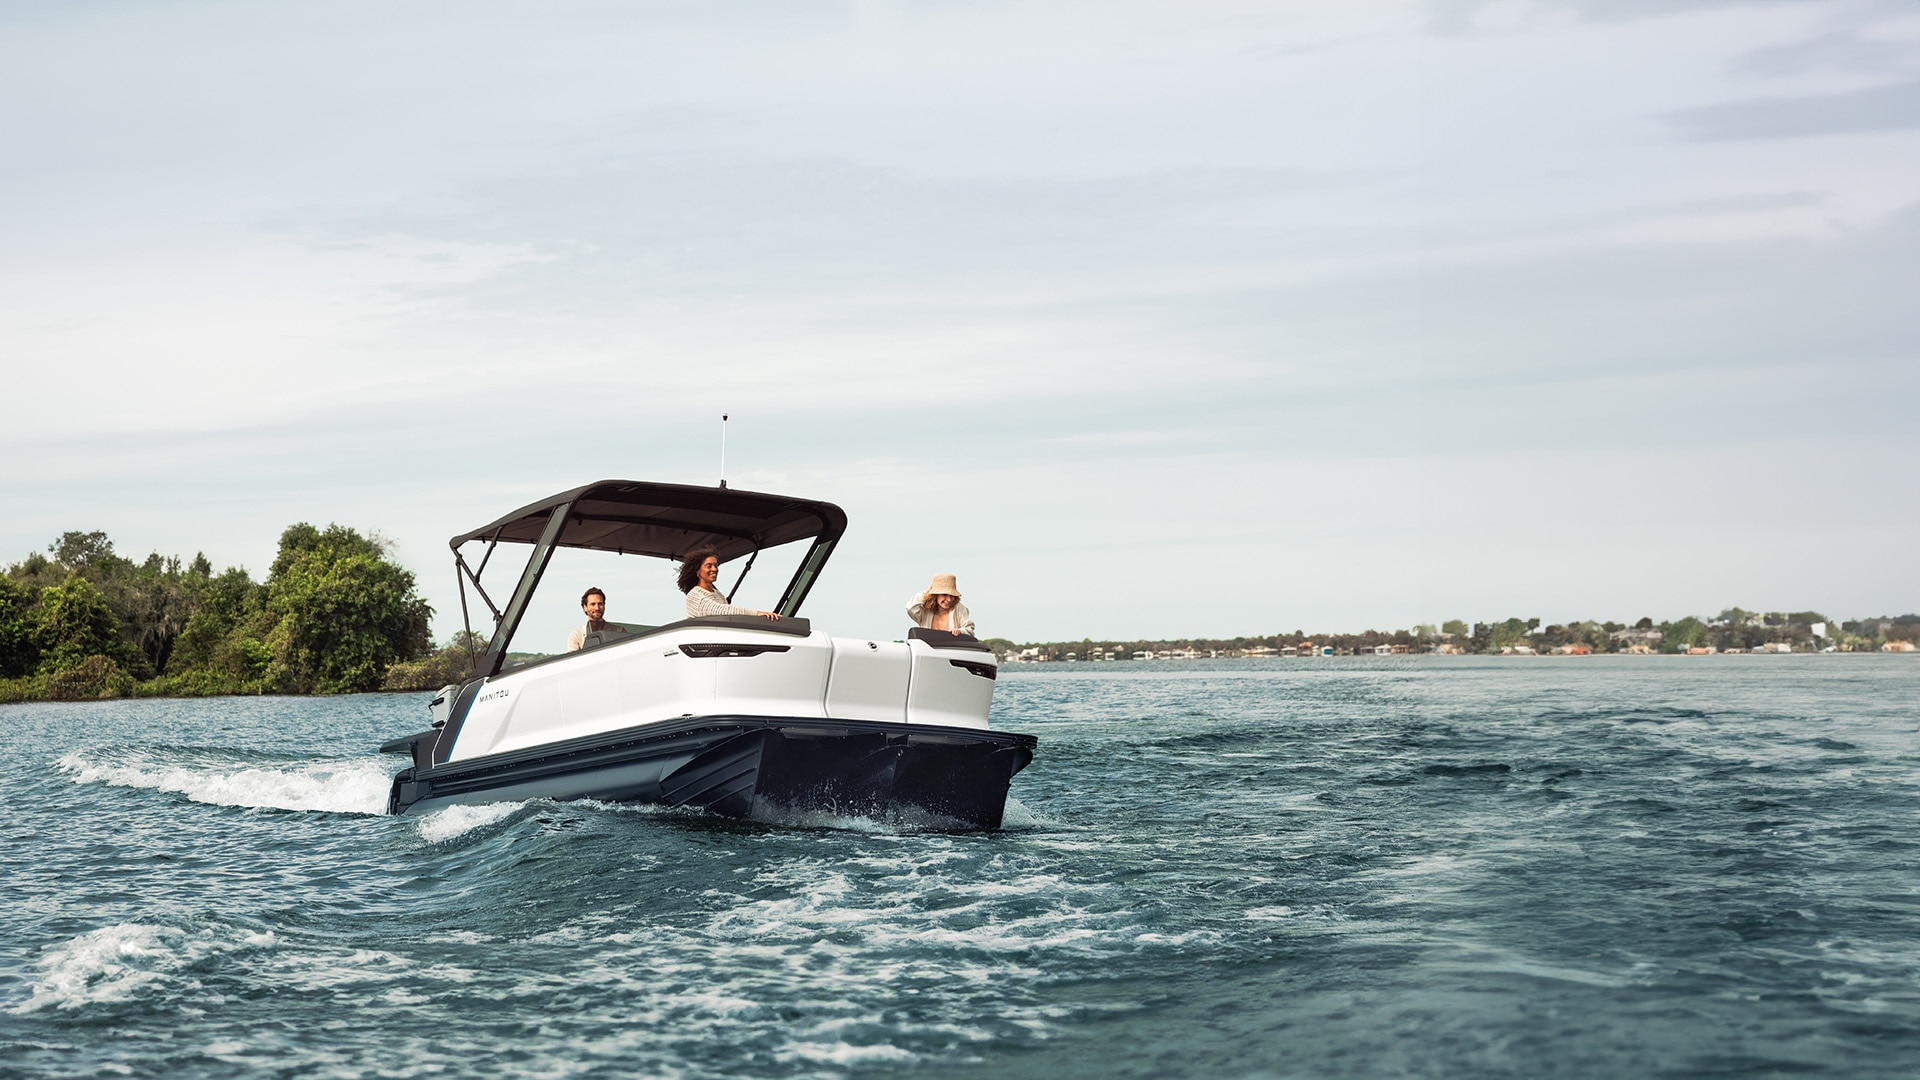 Manitou Explore 2024 bateau pontoon avec Sport Bimini top en croisière sur un lac